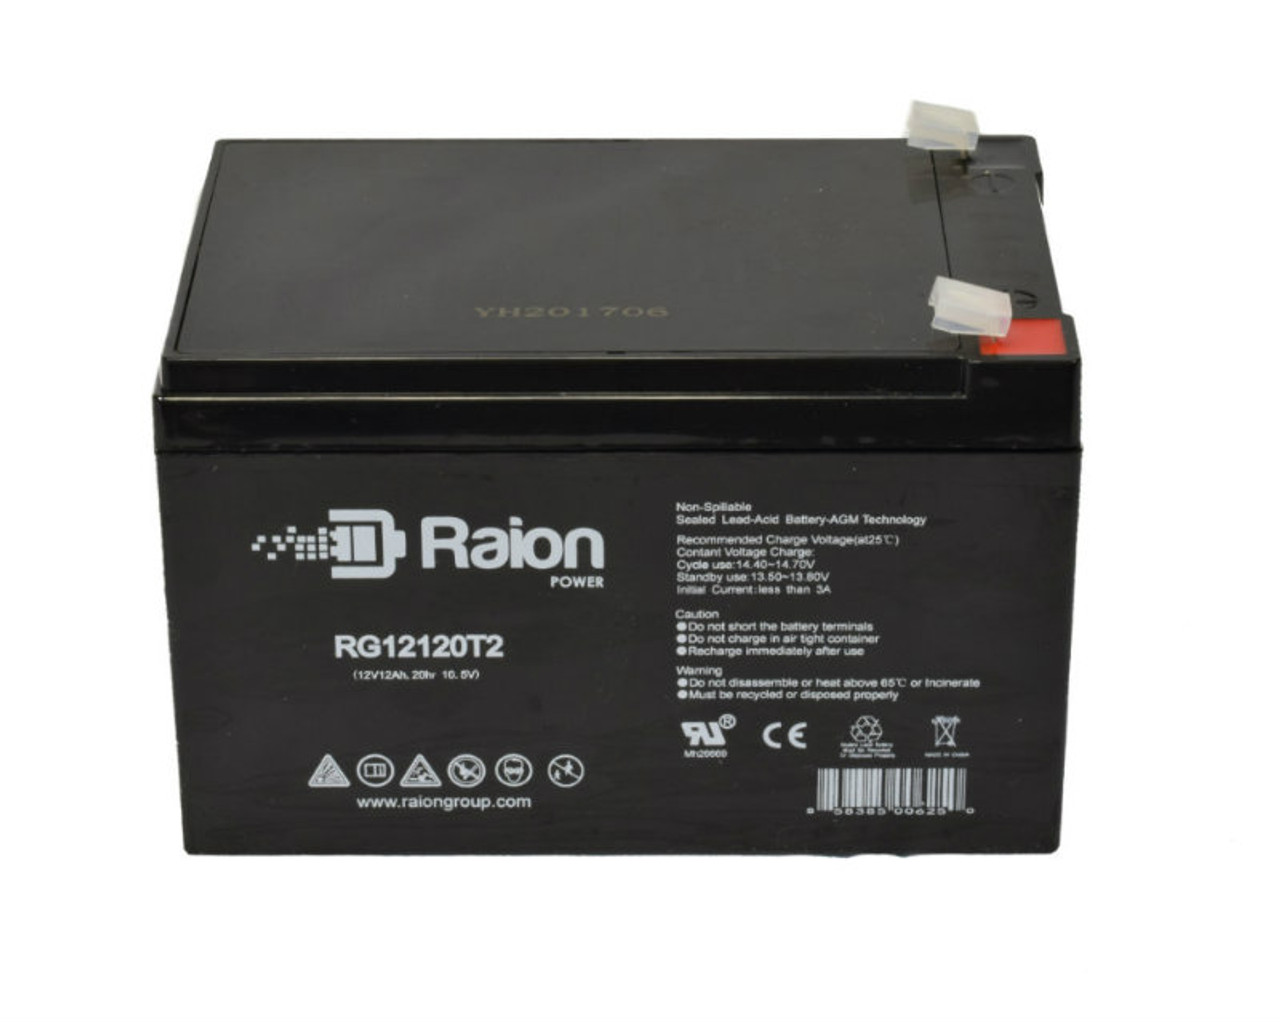 Raion Power RG12120T2 SLA Battery for Delta DTM 1215